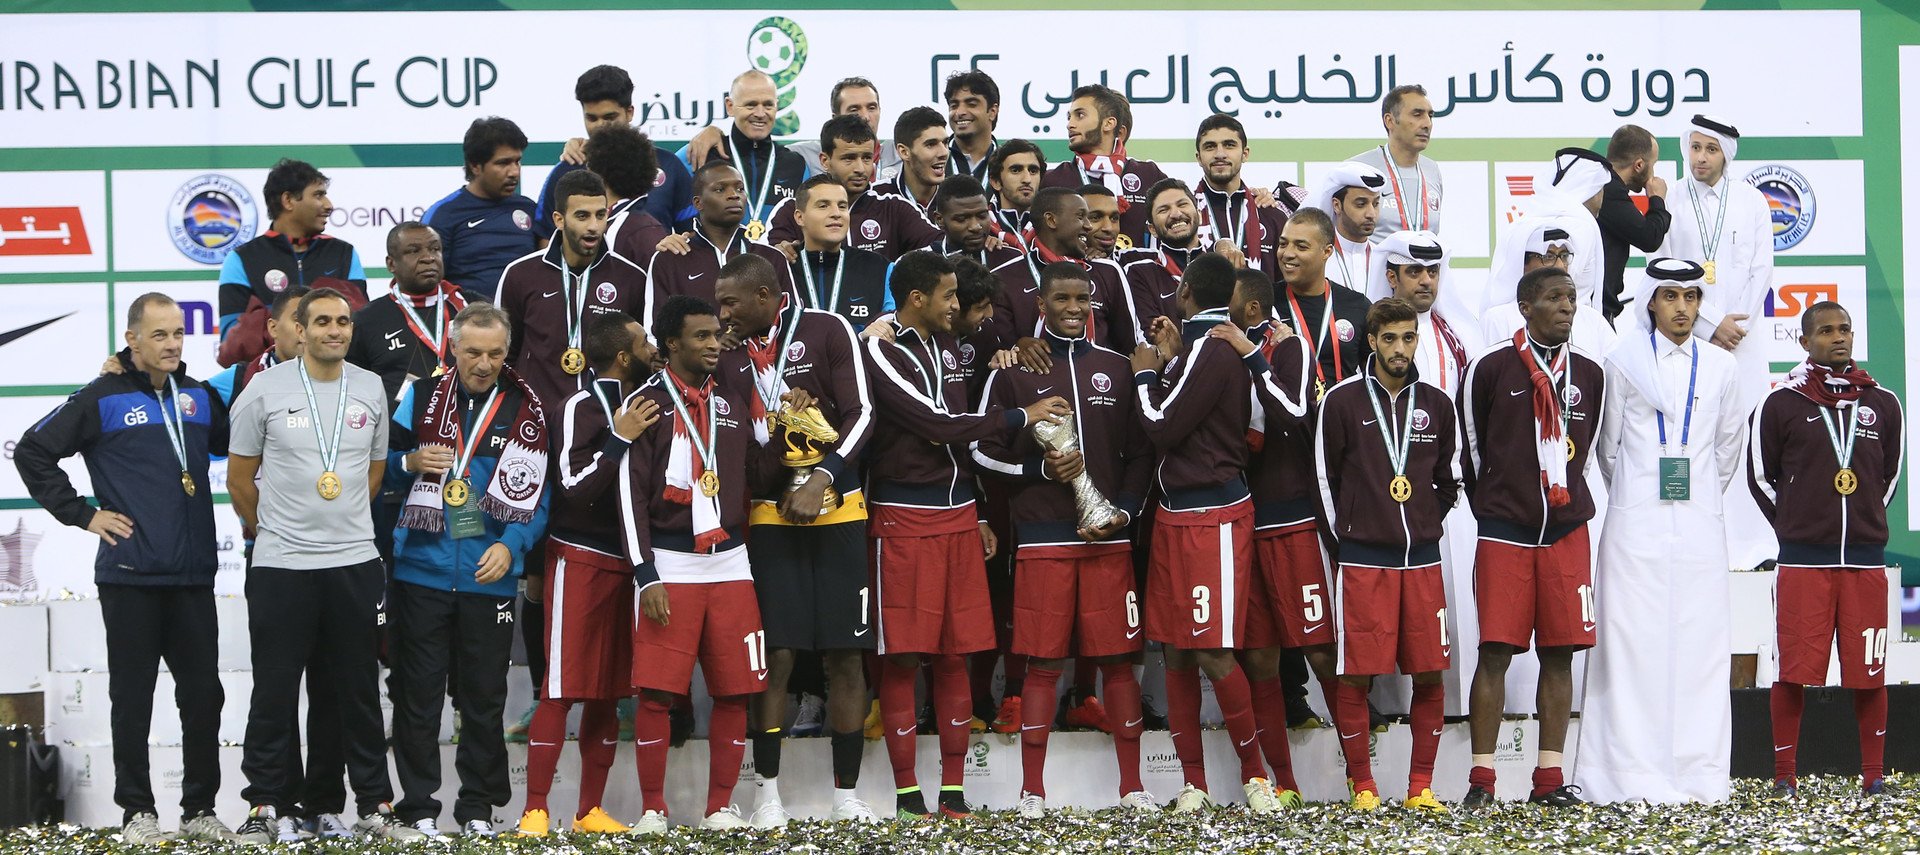 أكثر من 30 بطولة رياضية دولية في العالم العربي في 2014